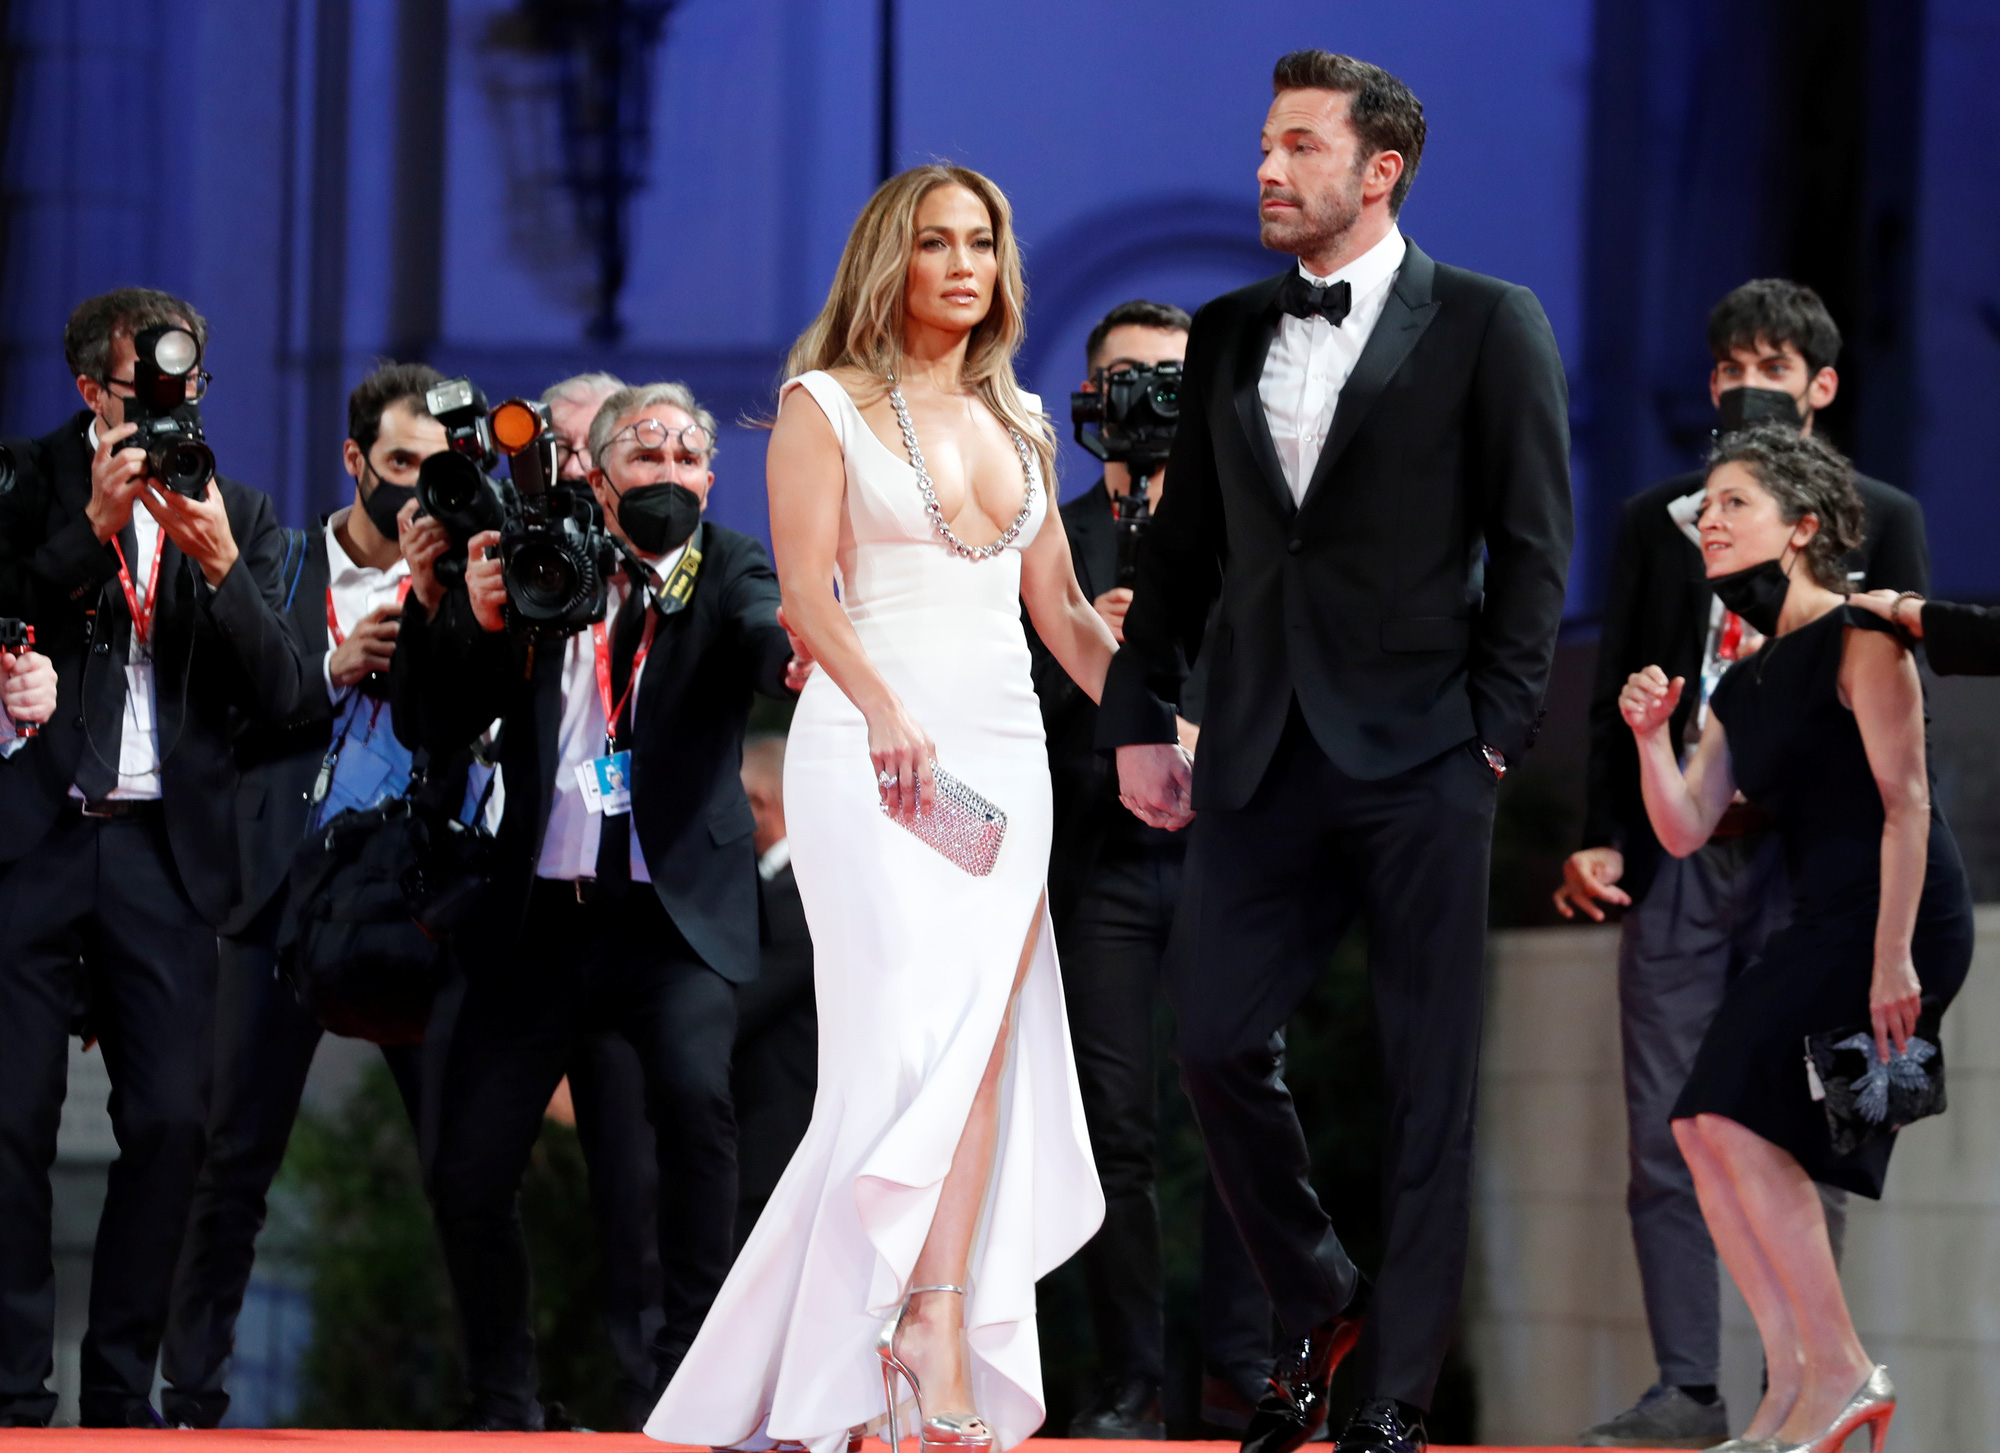 Jennifer Lopez - Ben Affleck: Nếu bạn là người hâm mộ của hai ngôi sao Hollywood nổi tiếng Jennifer Lopez và Ben Affleck, hãy xem bức ảnh này và thấy được tình cảm thăng hoa của cặp đôi này. Với nụ cười tươi, ánh mắt lấp lánh, họ cùng nhau bước trên con đường tình yêu với vô vàn hy vọng và niềm tin.